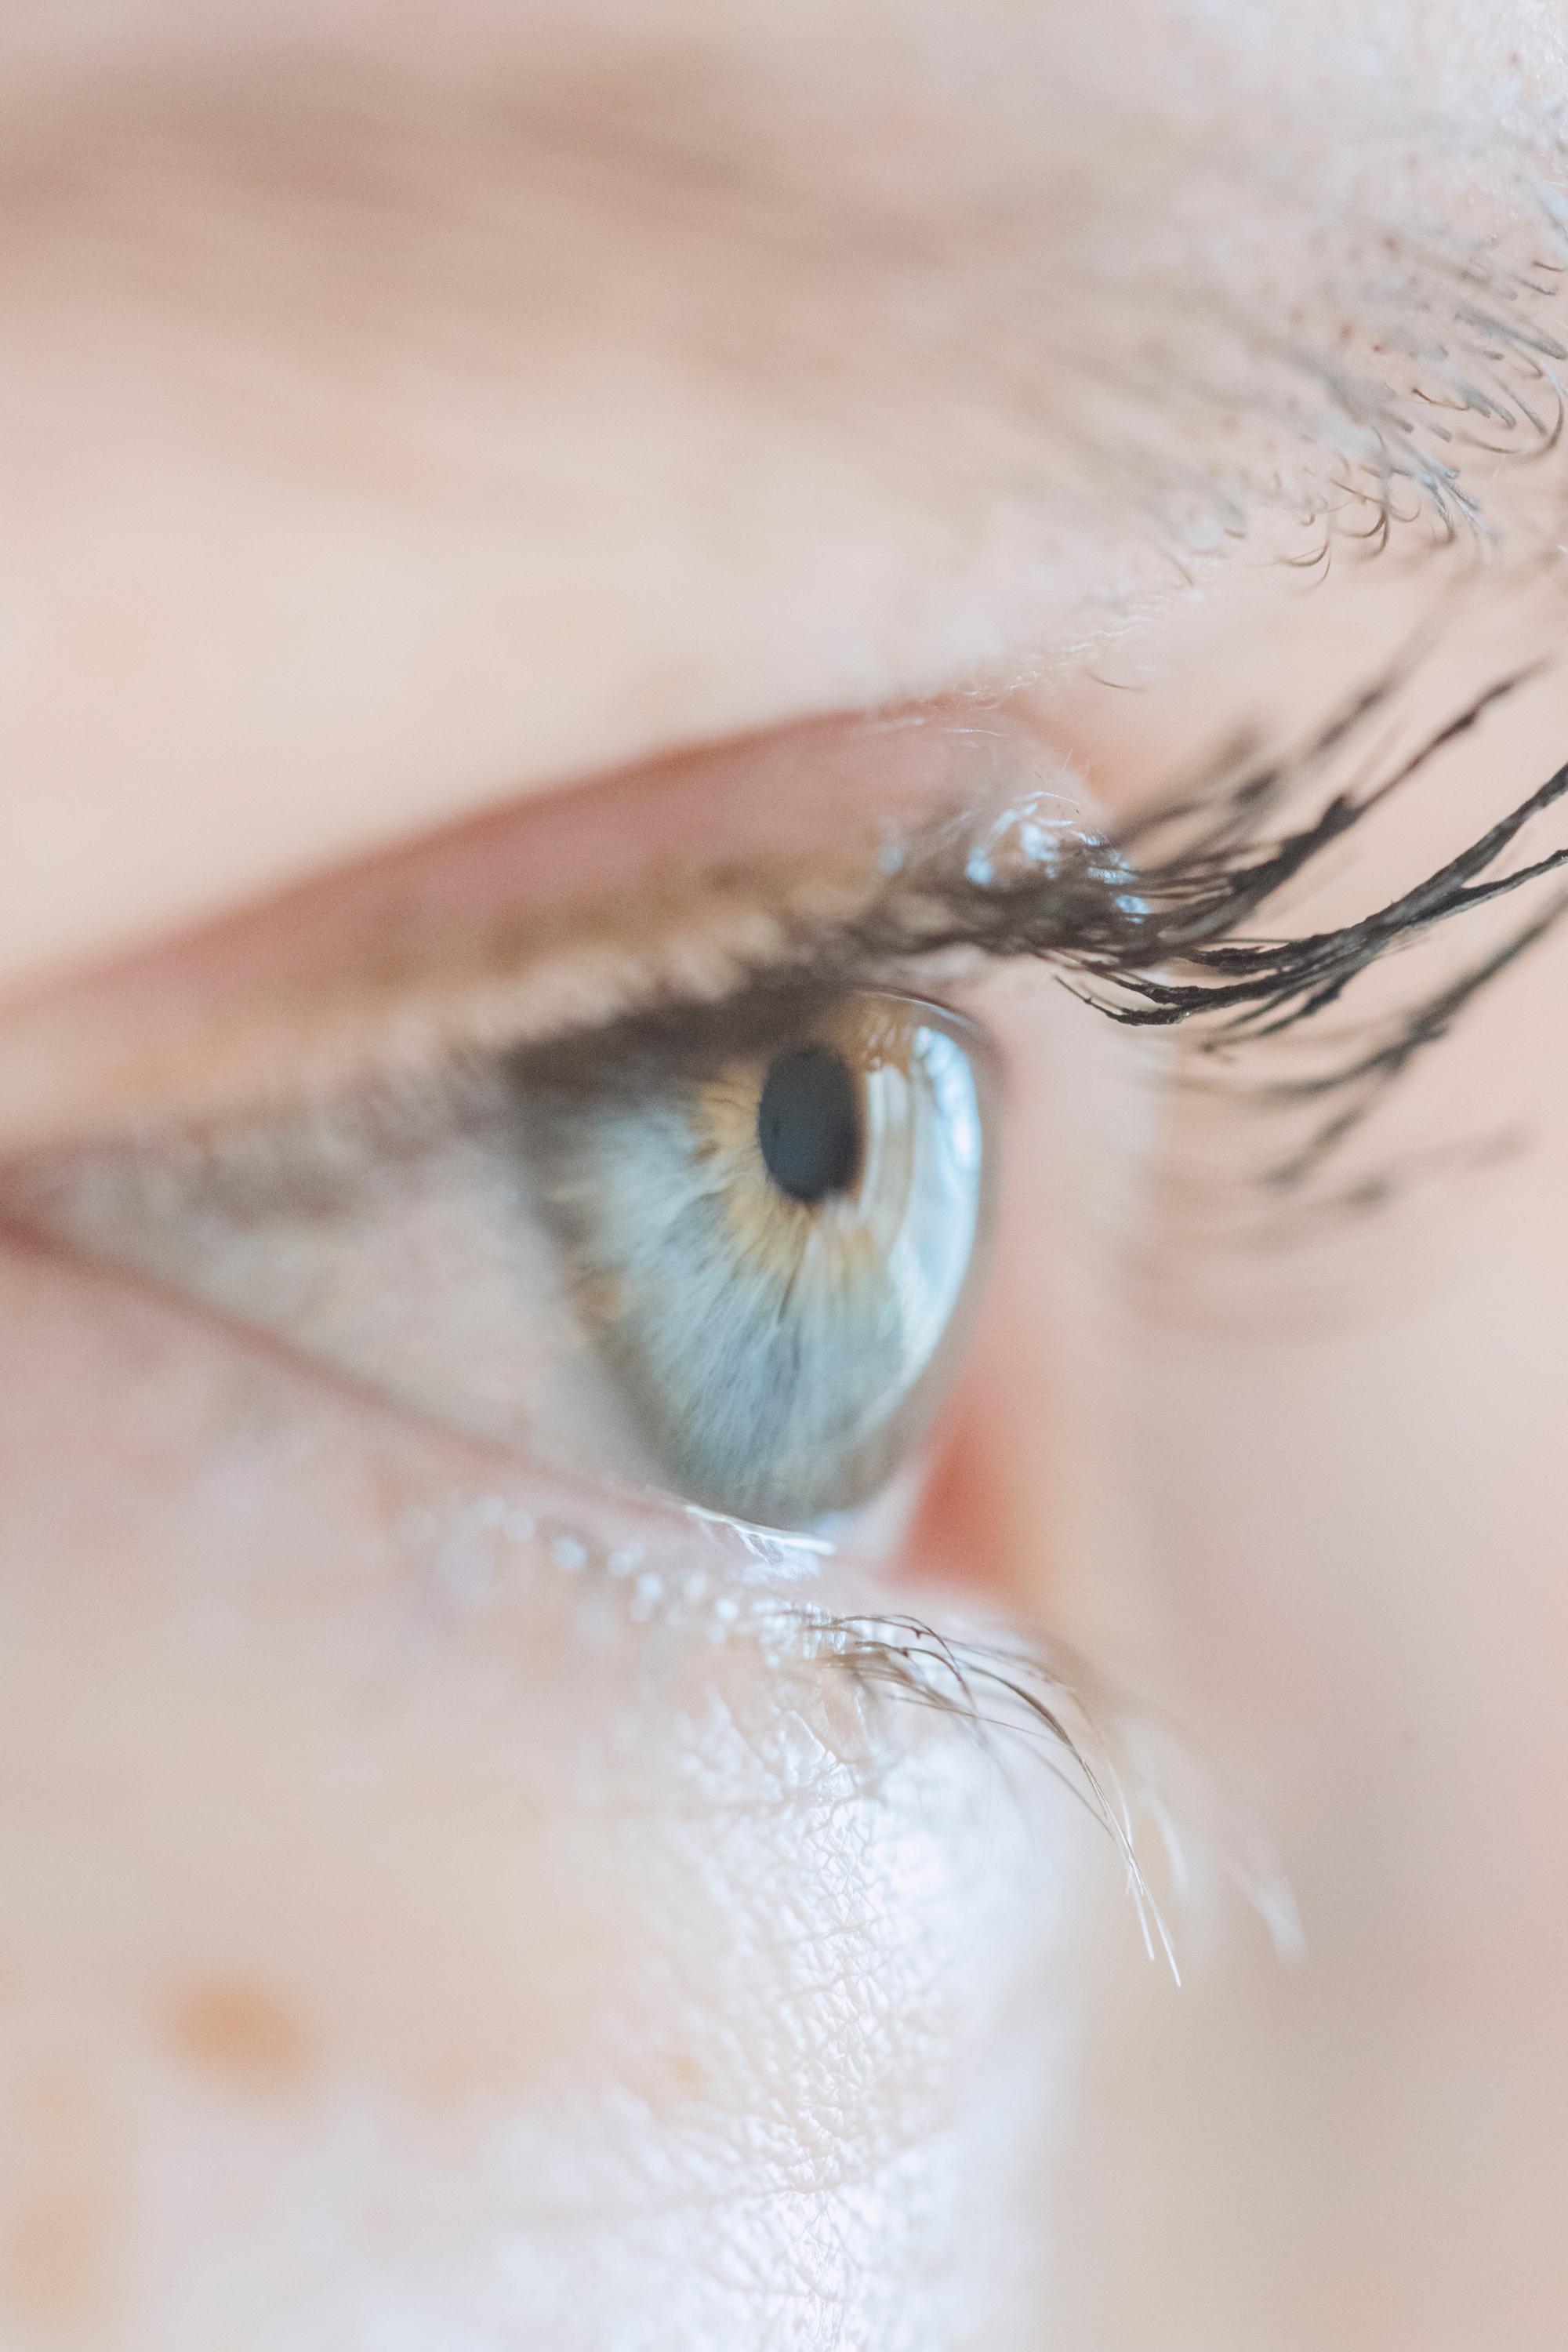 Makijaż dla oczu okrągłych: jak optycznie wydłużyć i nadać głębi spojrzeniu